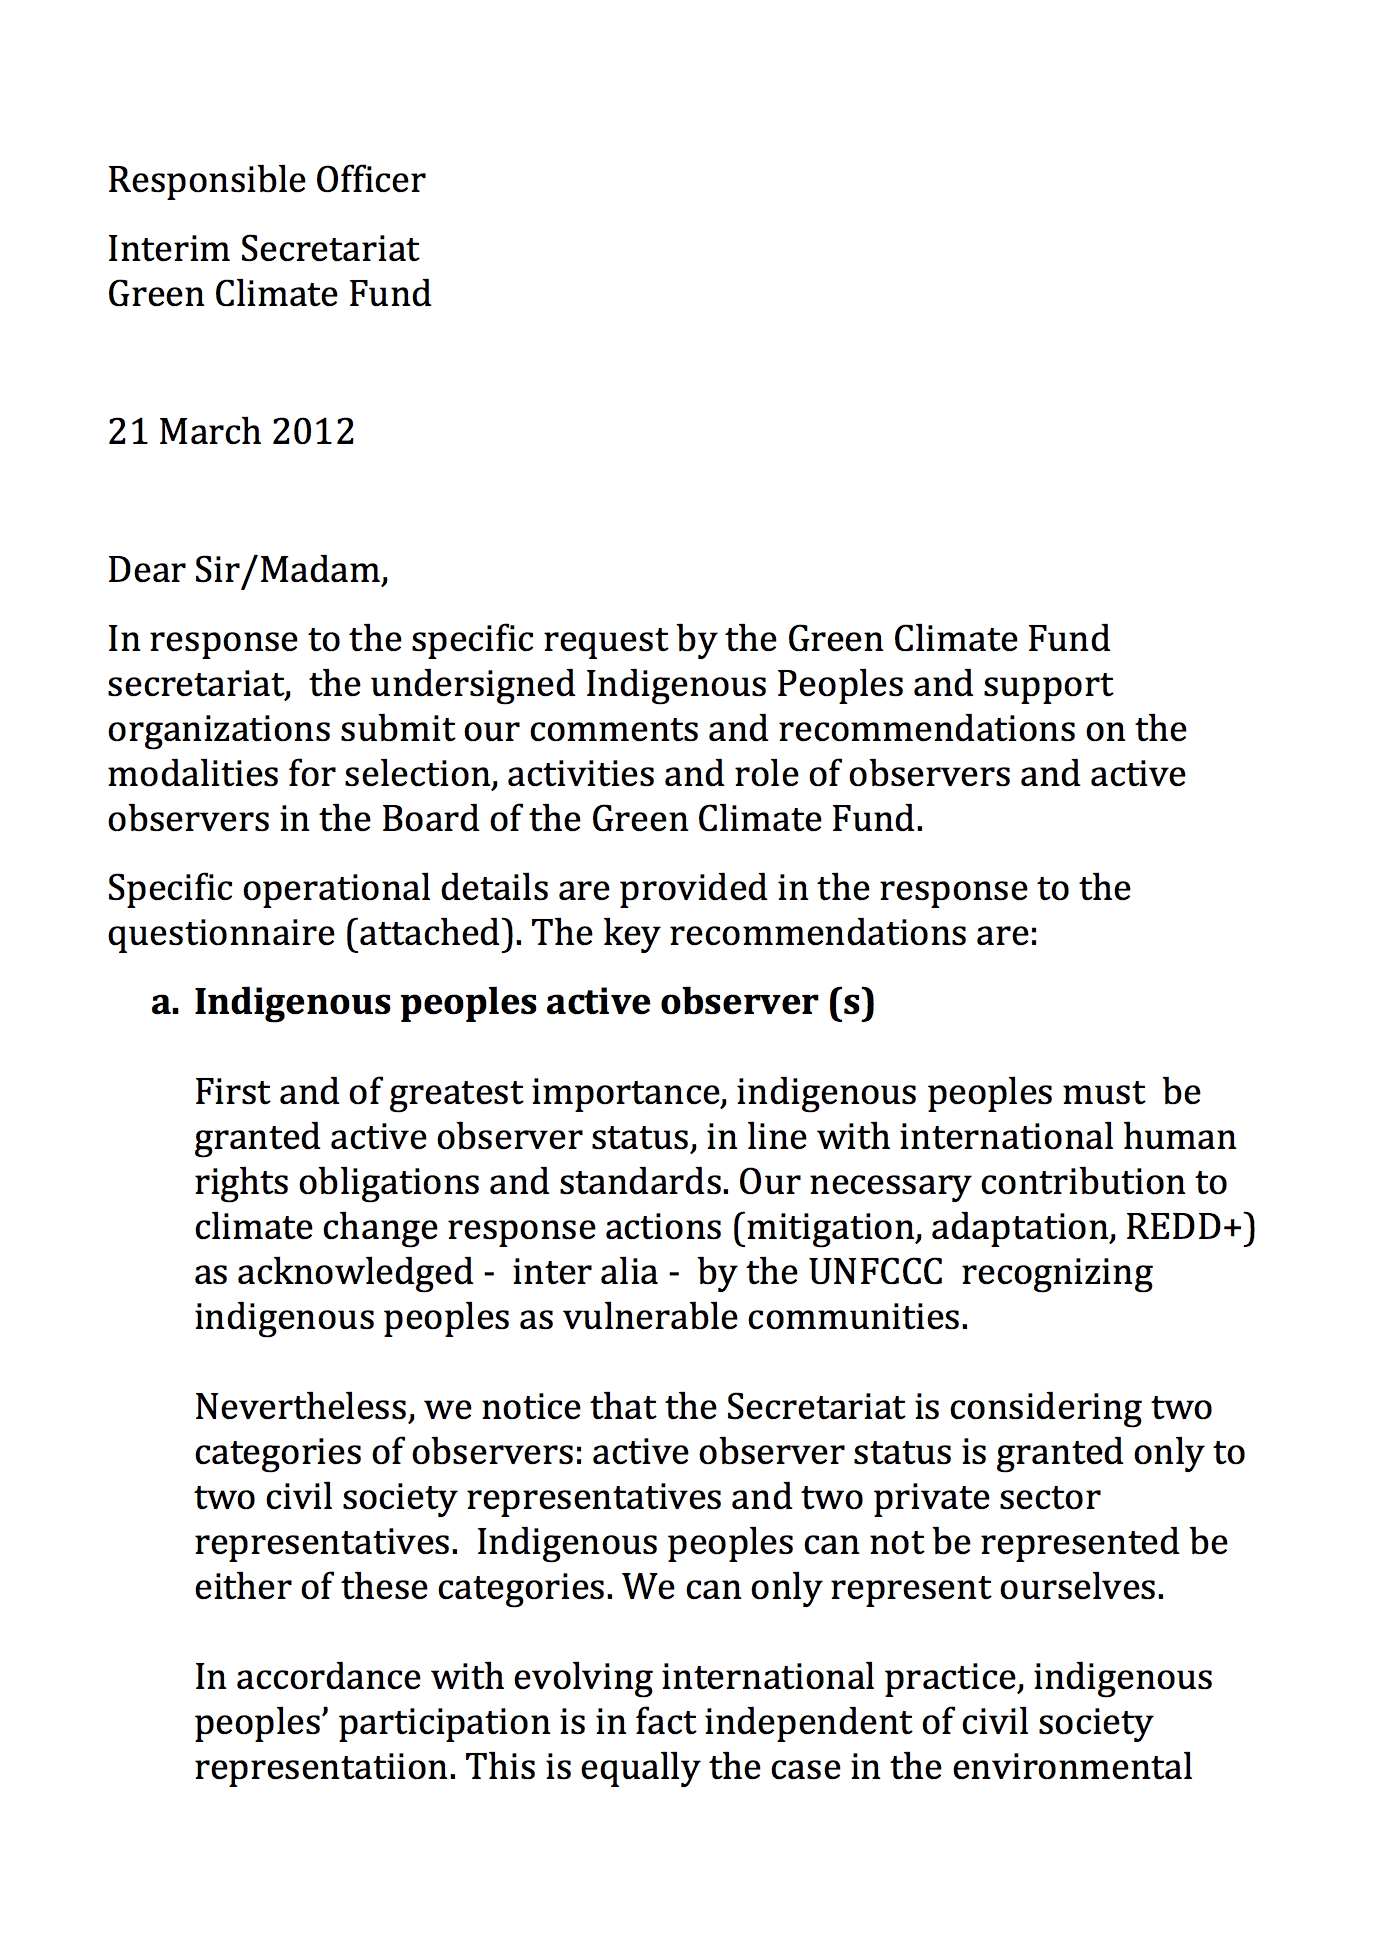 Letter to GCF Secretariat